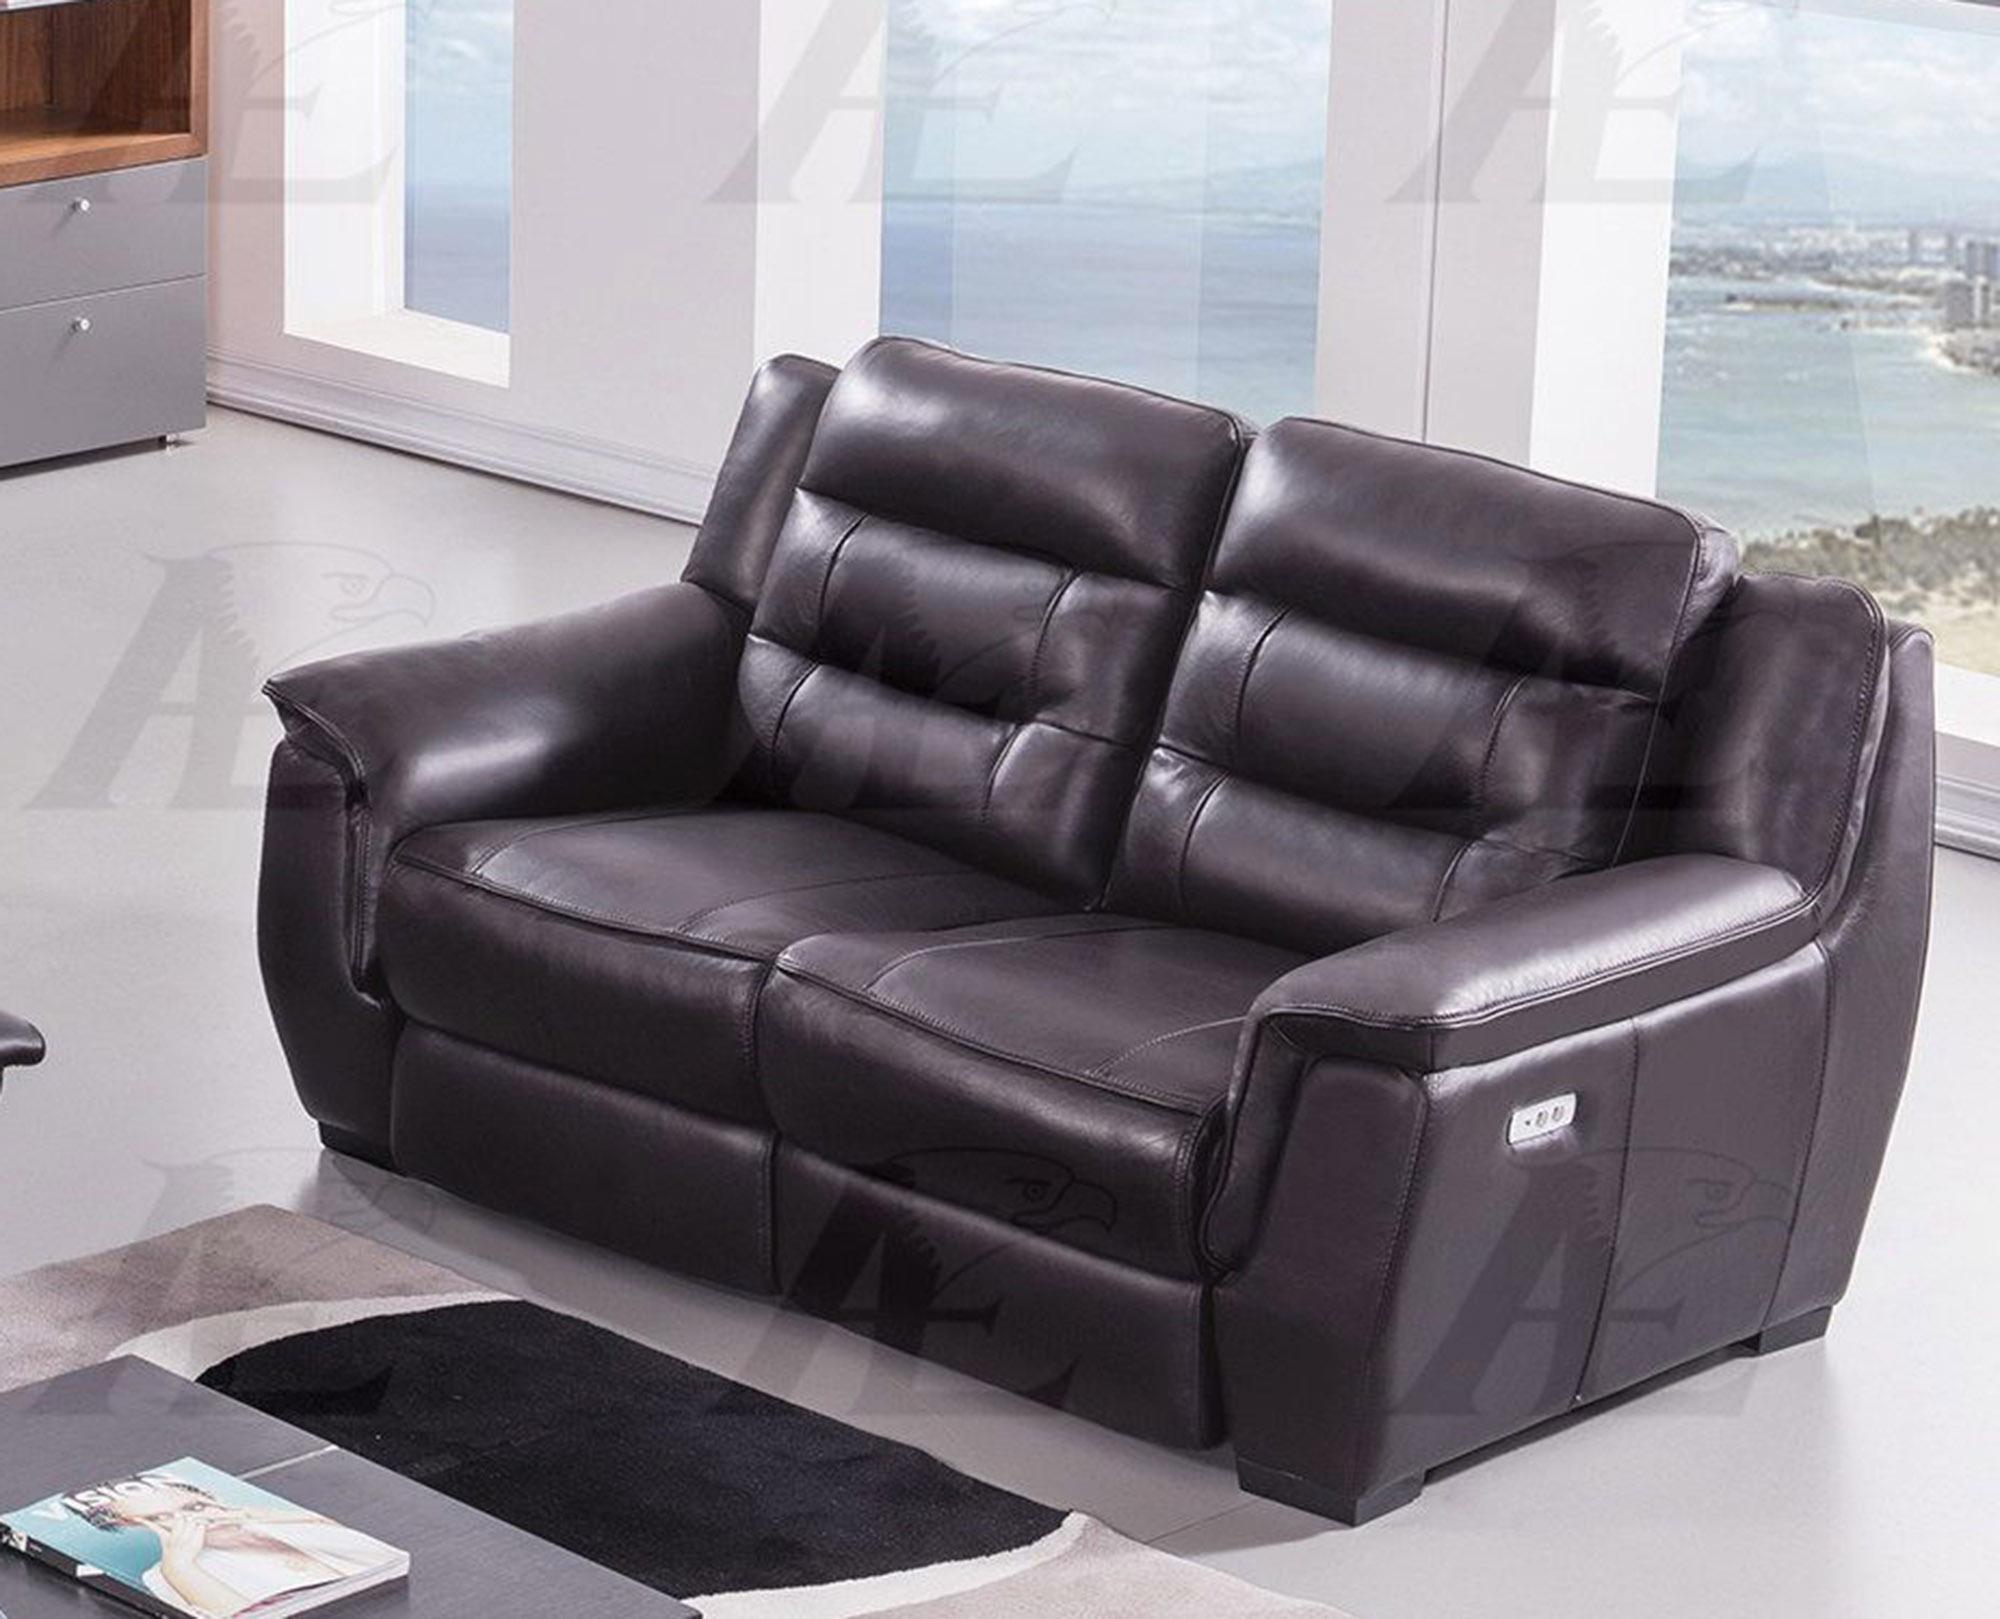 

    
American Eagle Furniture EK089-DB-LS Recliner Loveseat Dark Brown EK089-DB-LS
